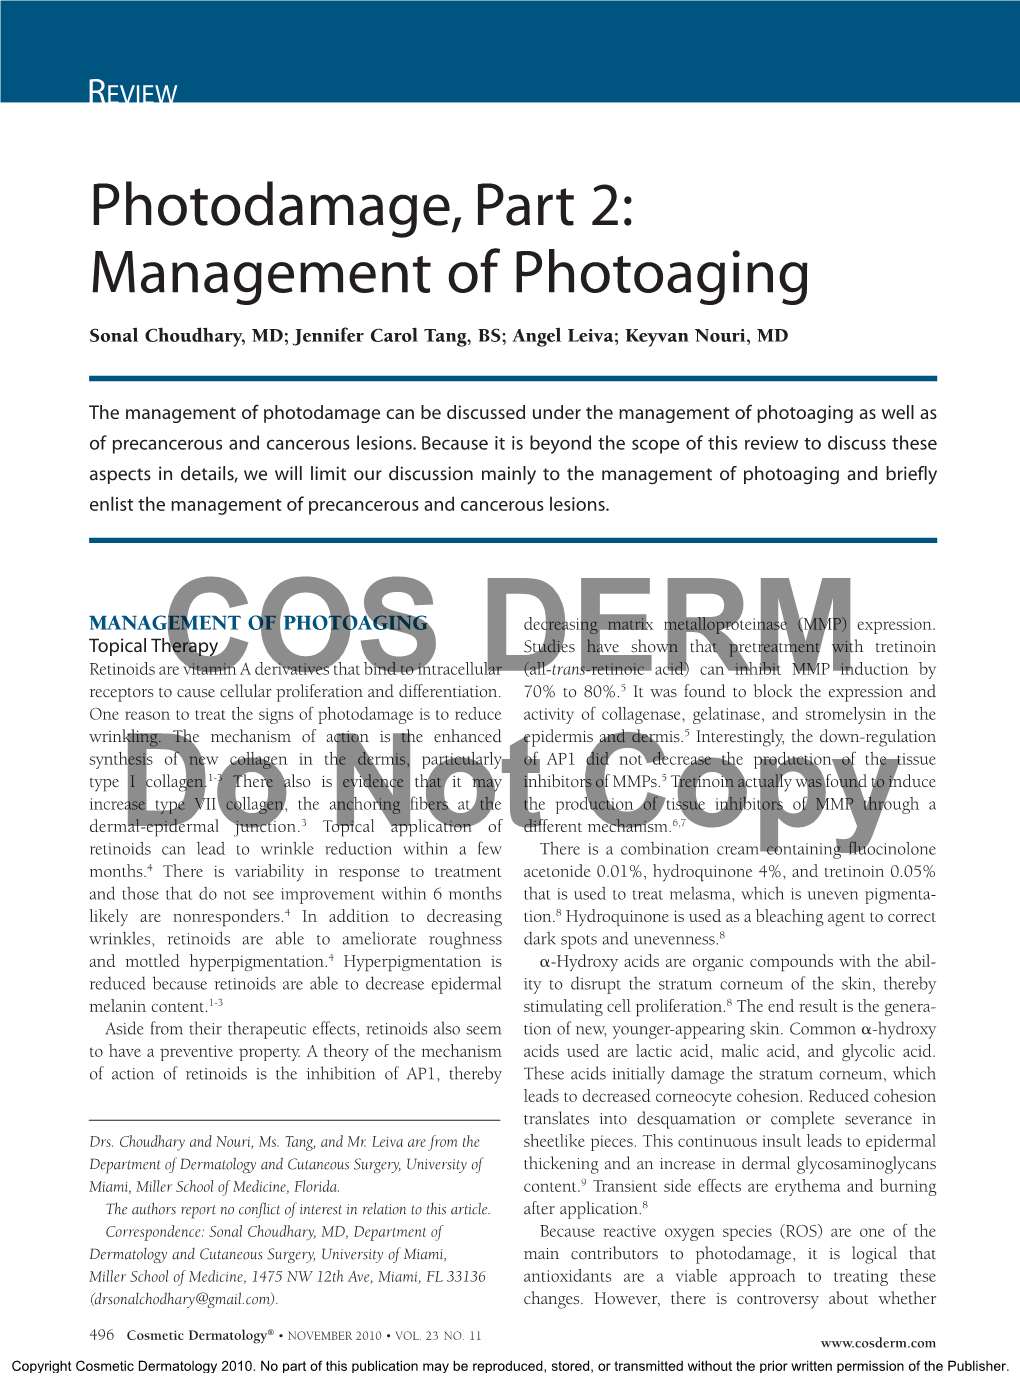 Photodamage, Part 2: Management of Photoaging